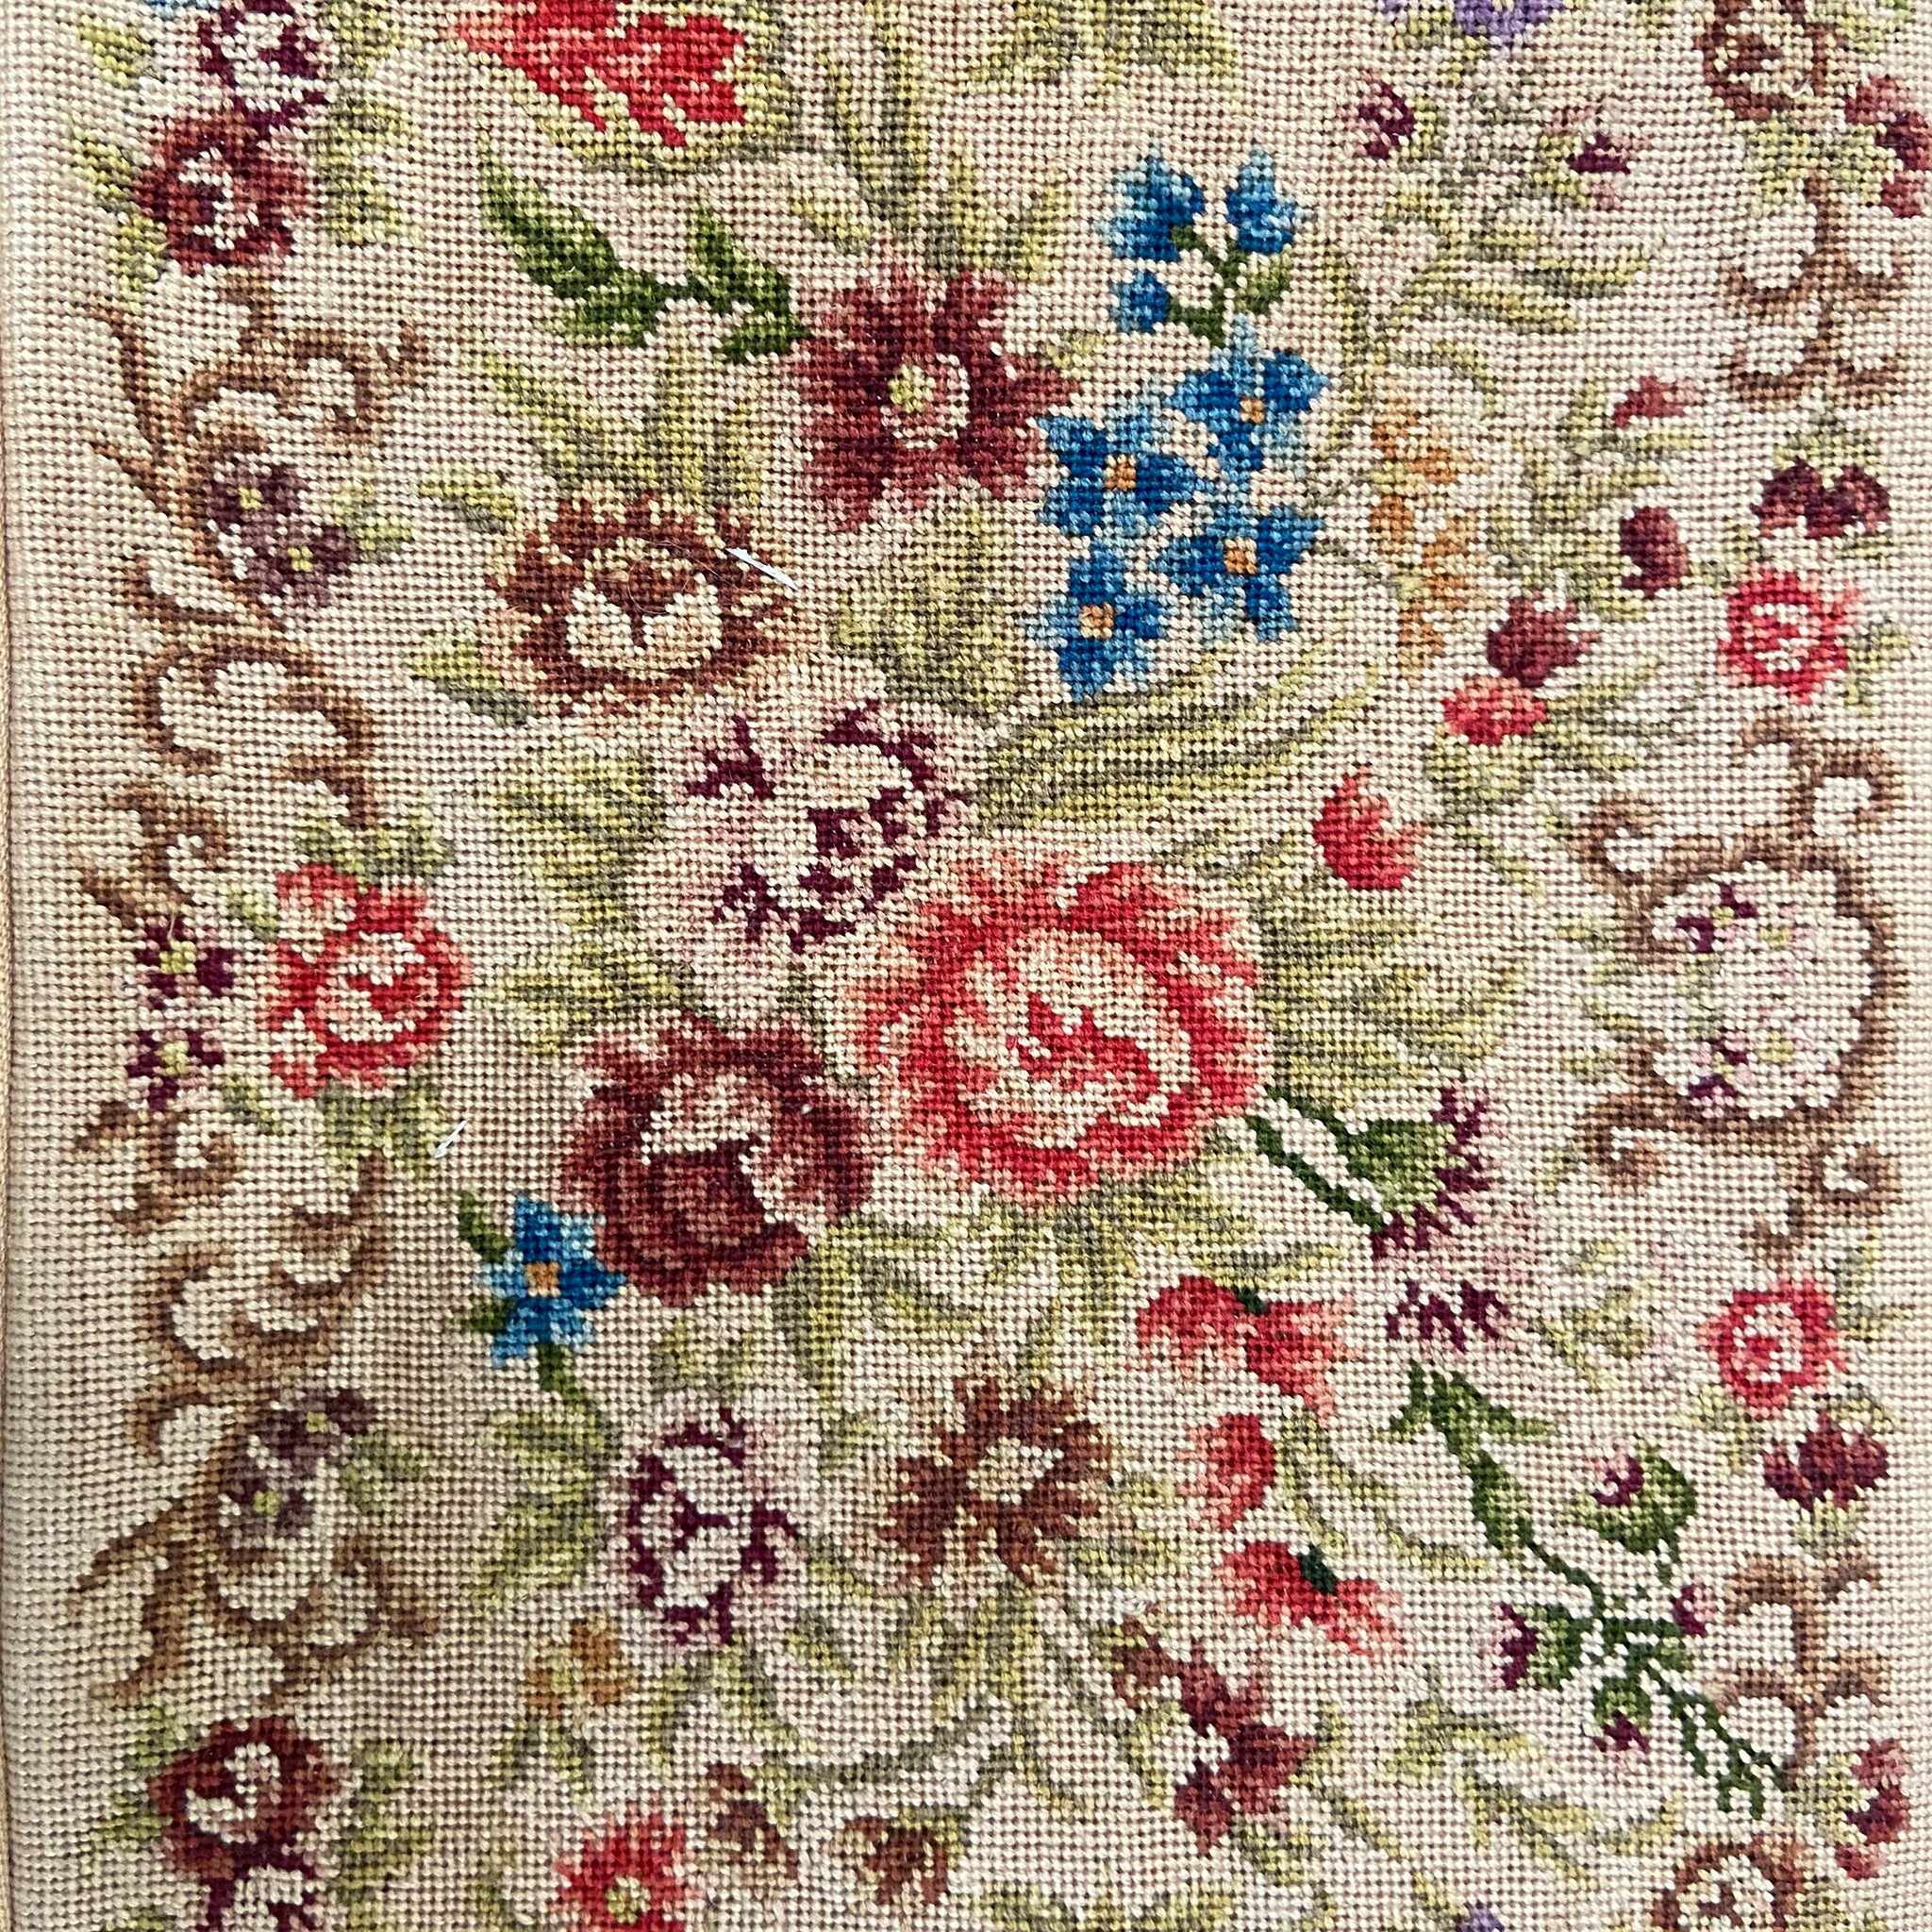 Huge Vintage 1950s Roses Floral Tapestry Handbag - New! – Coutura Vintage